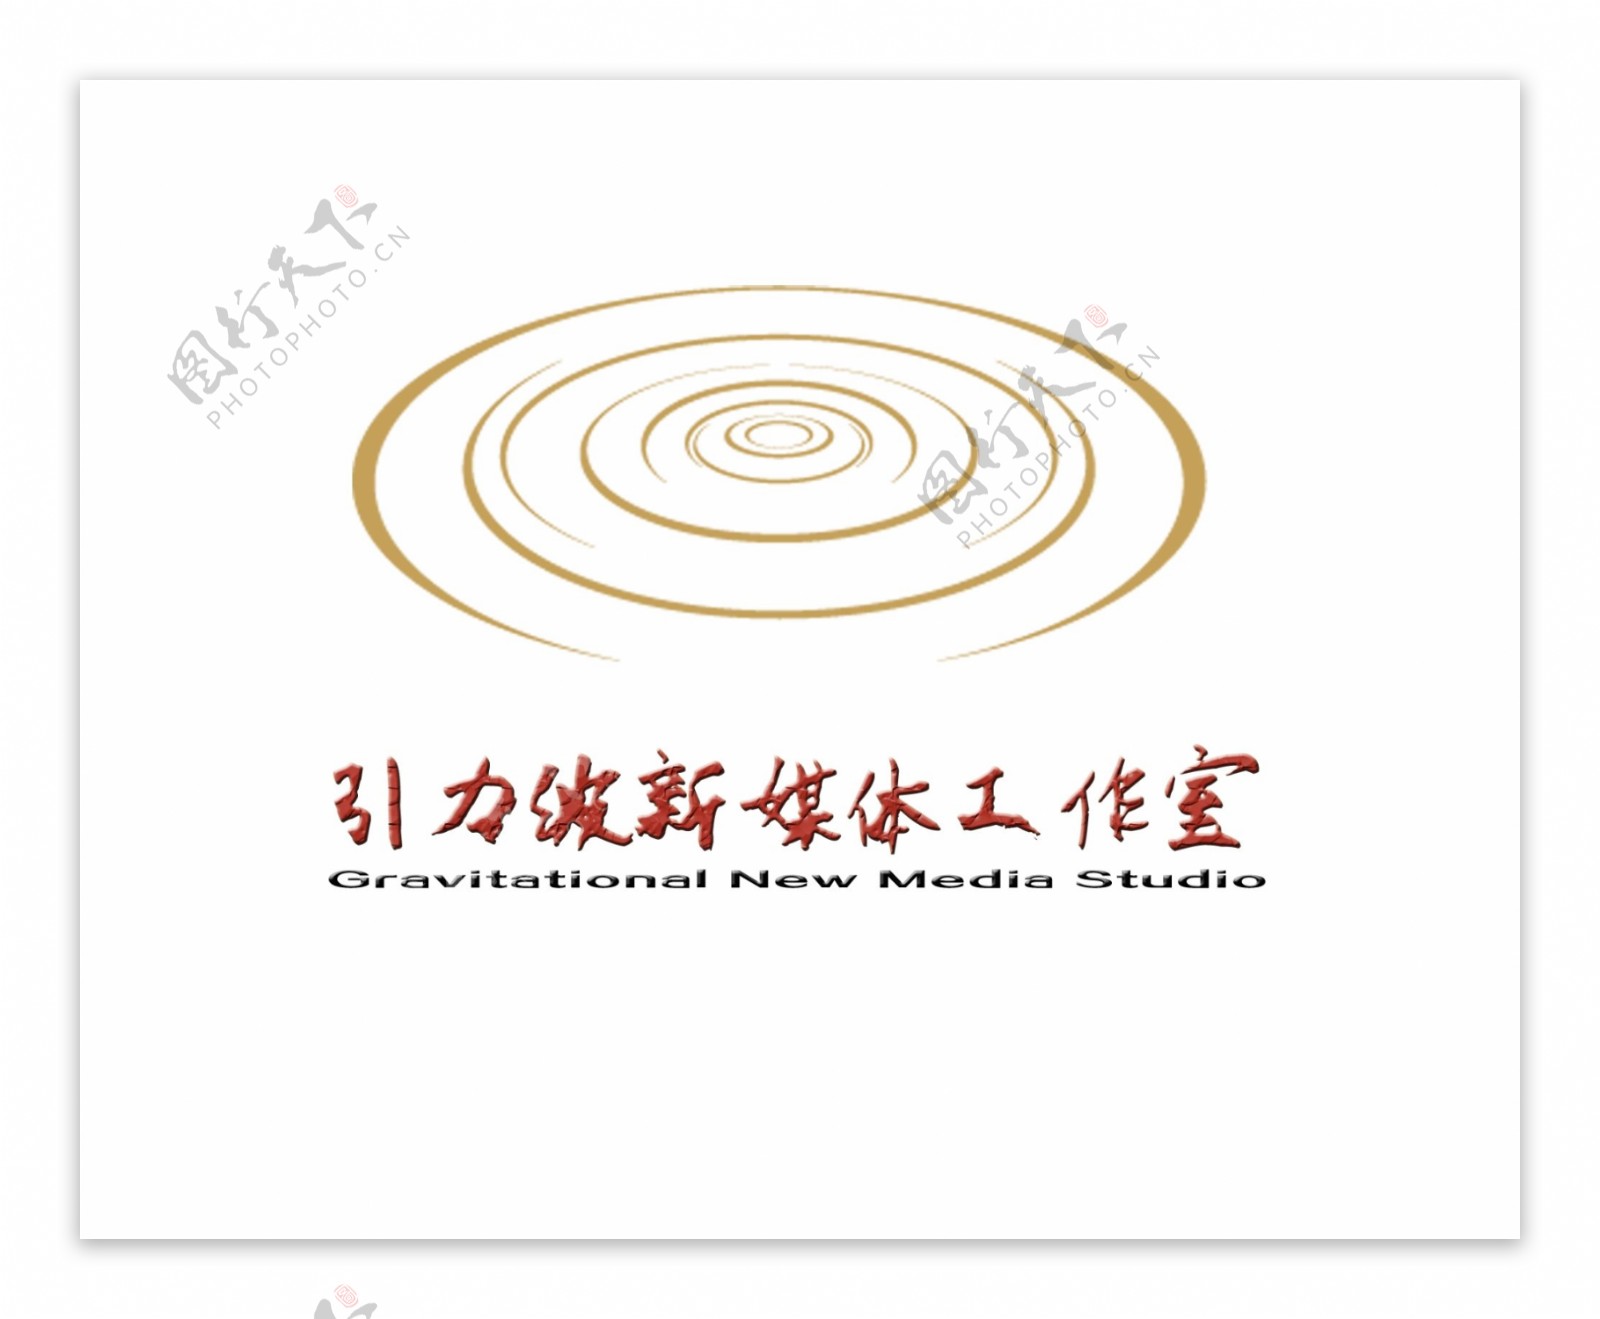 引力波工作室logo设计新版创意标志设计